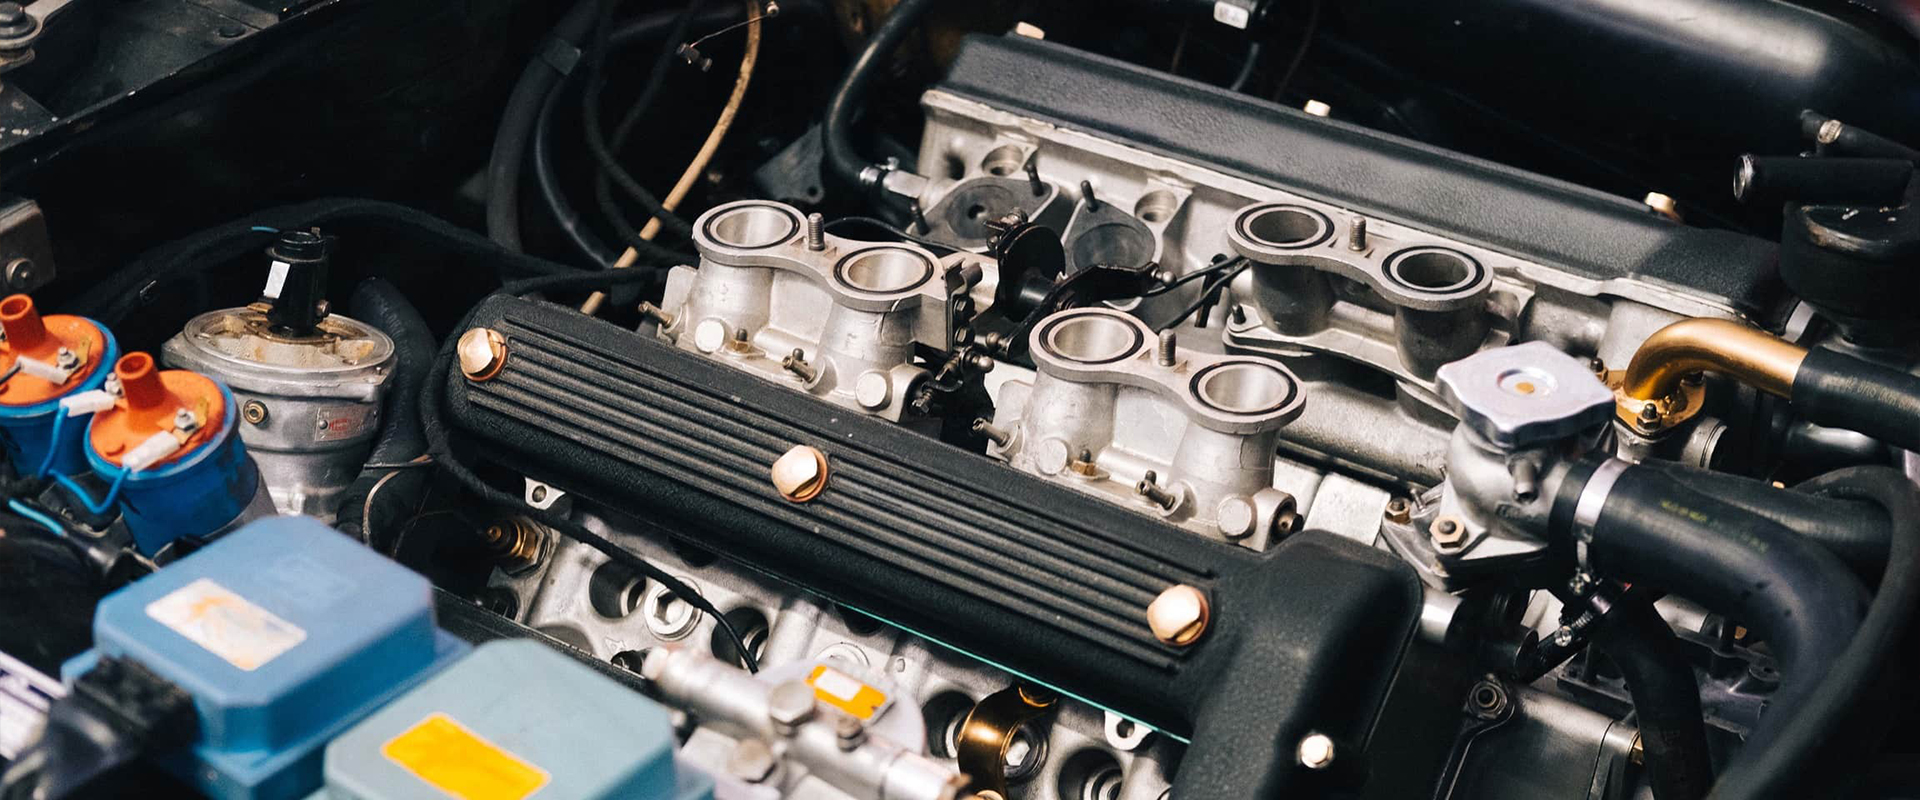 Der fast fertige Motor eines Alfa Romeo Montreal